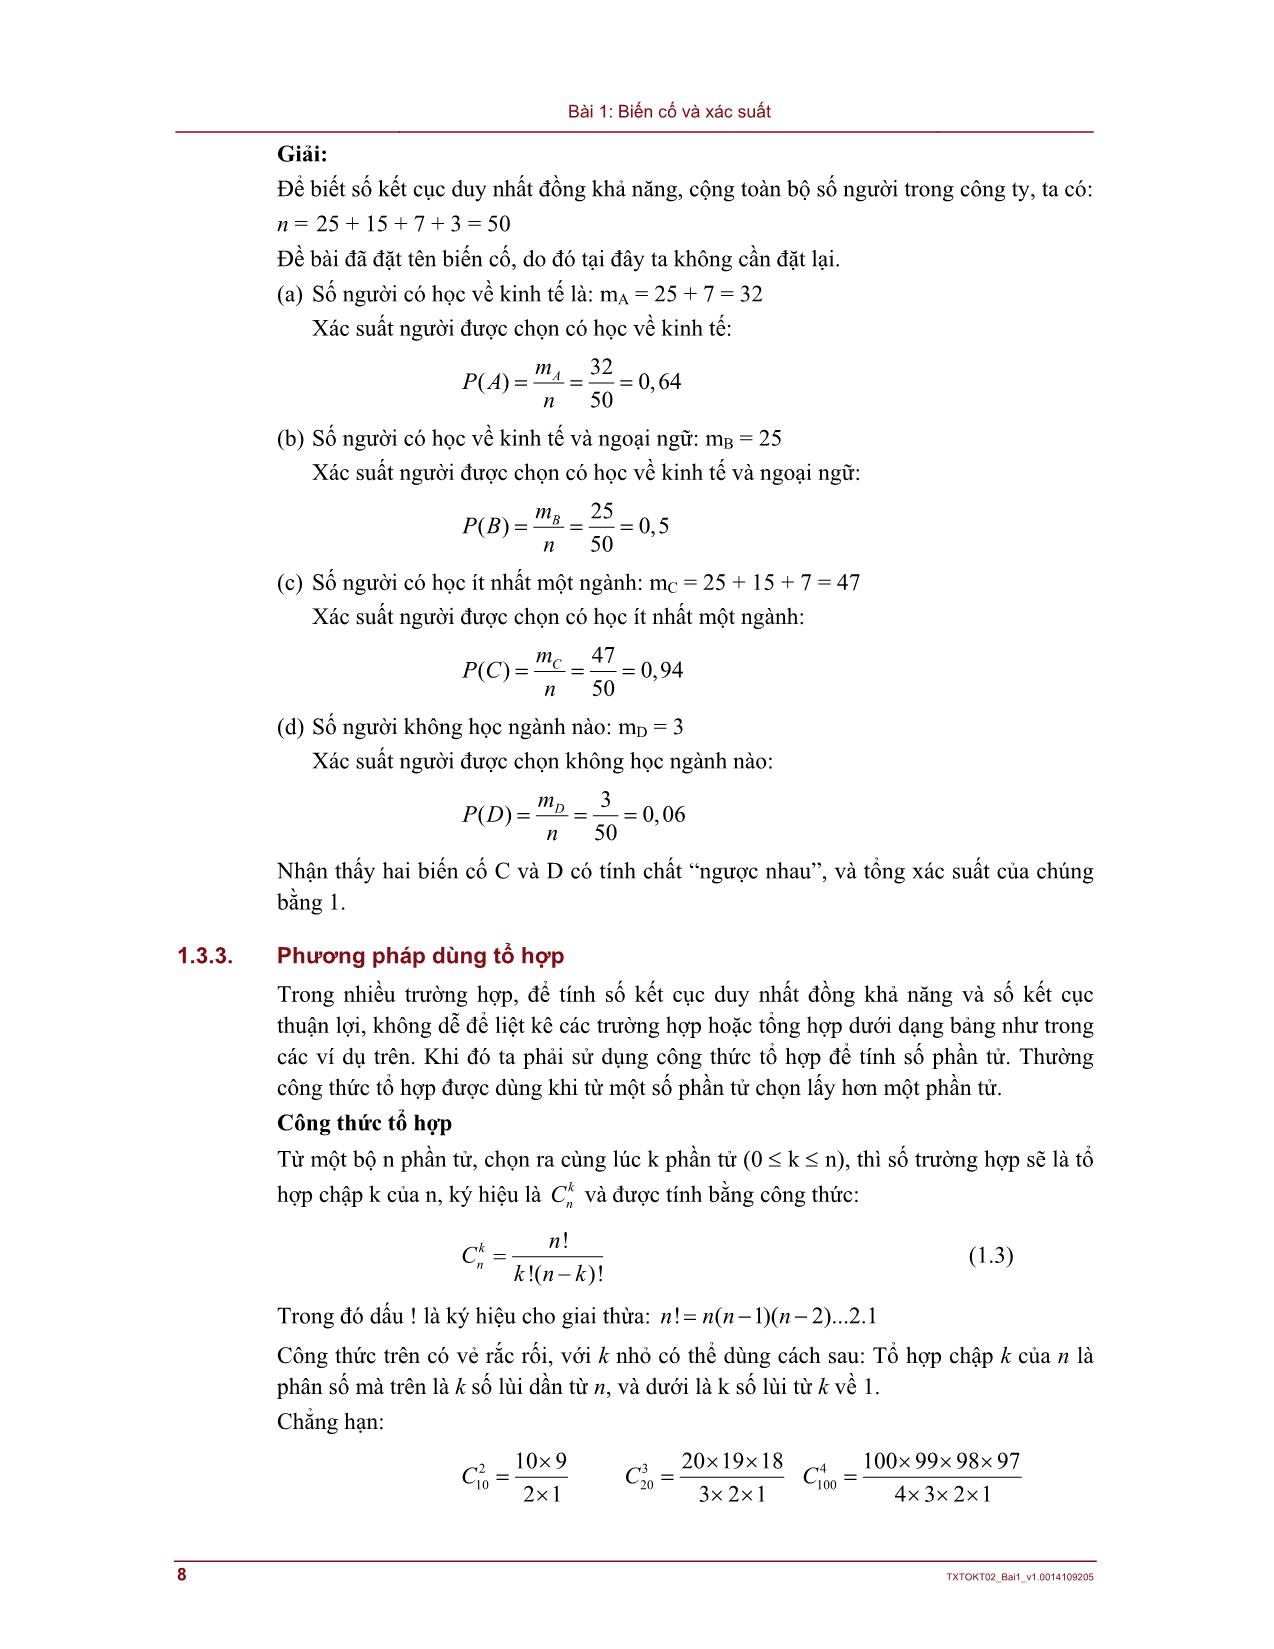 Bài giảng Lý thuyết xác suất và thống kê - Bài 1: Biến cố và xác suất trang 8